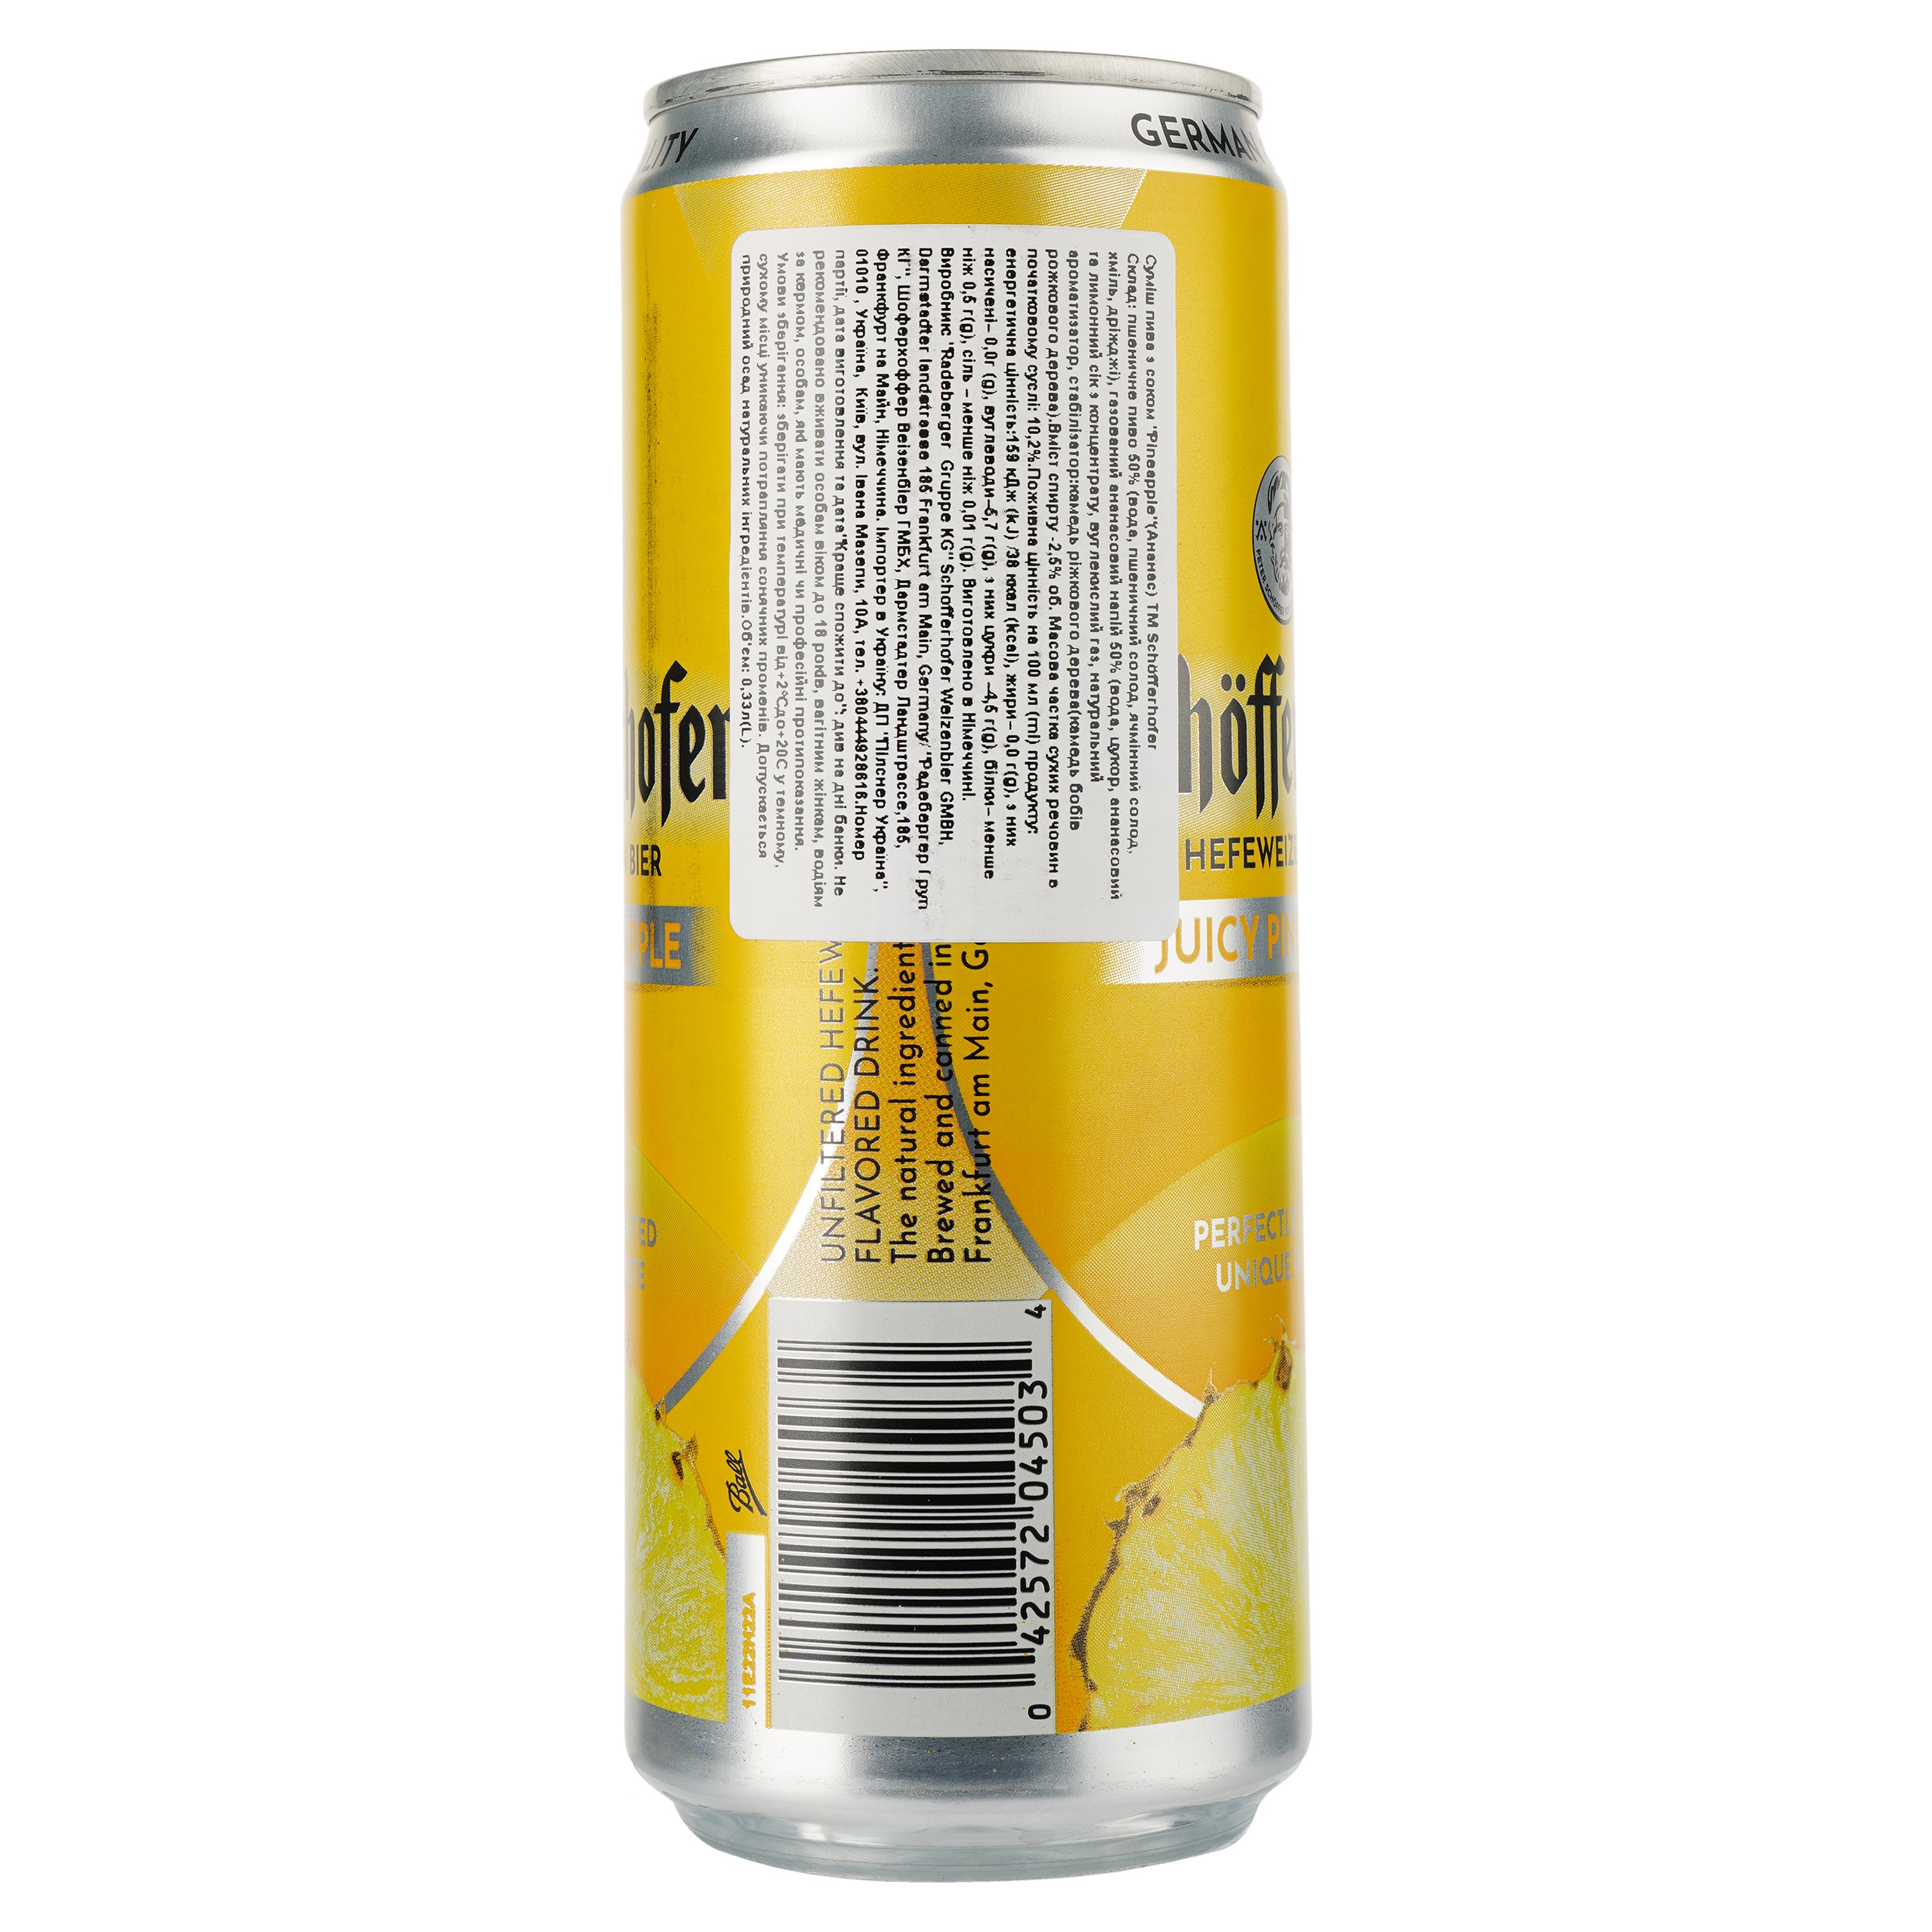 Пиво Schofferhofer Juicy Pineapple, светлое, нефильтрованное, с соком, 2.5%, ж/б, 0.33 л - фото 3